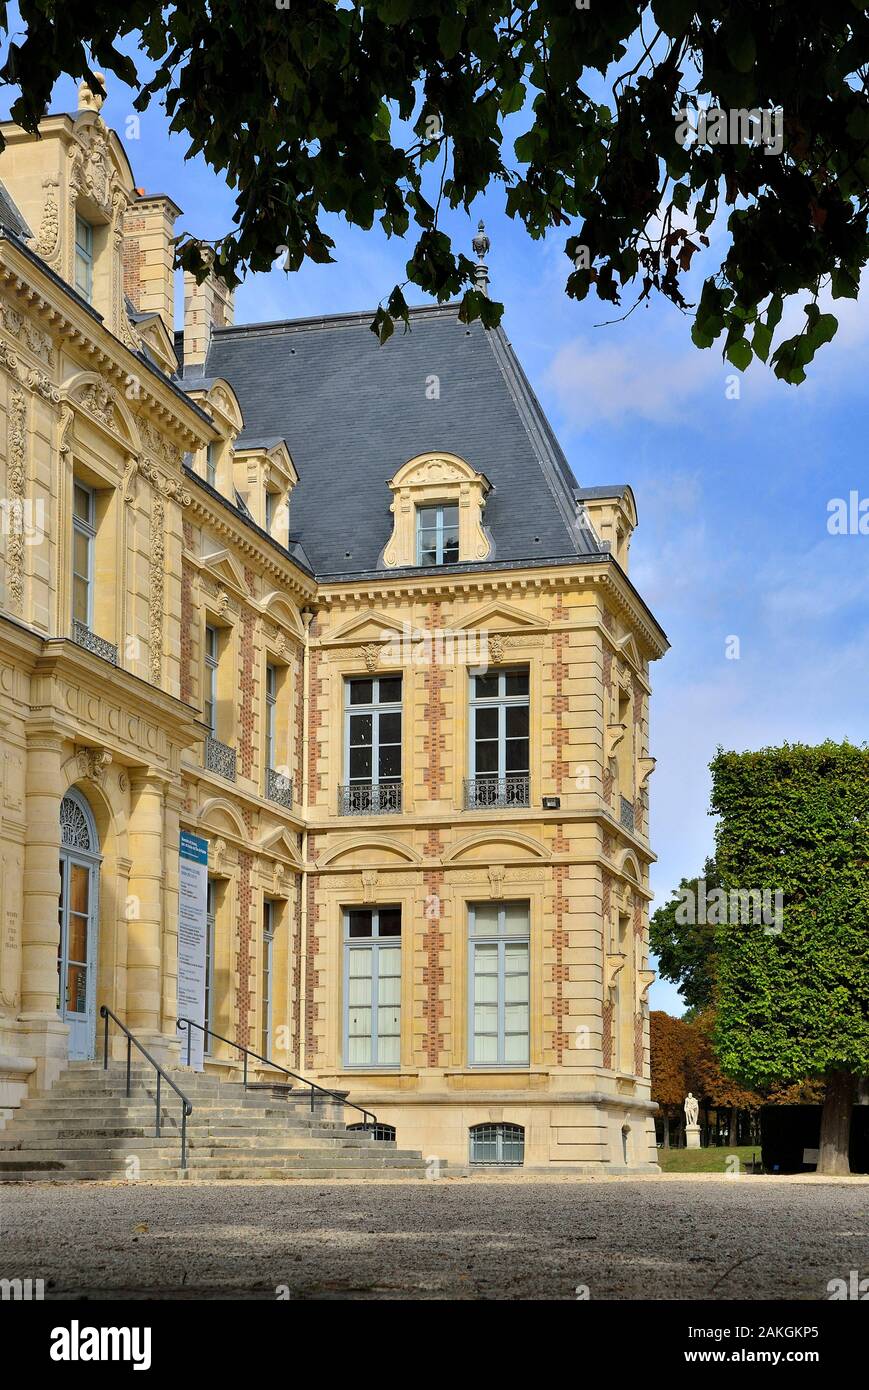 France, Hauts de Seine, Sceaux, the park and the castle housing the Ile de France museum Stock Photo